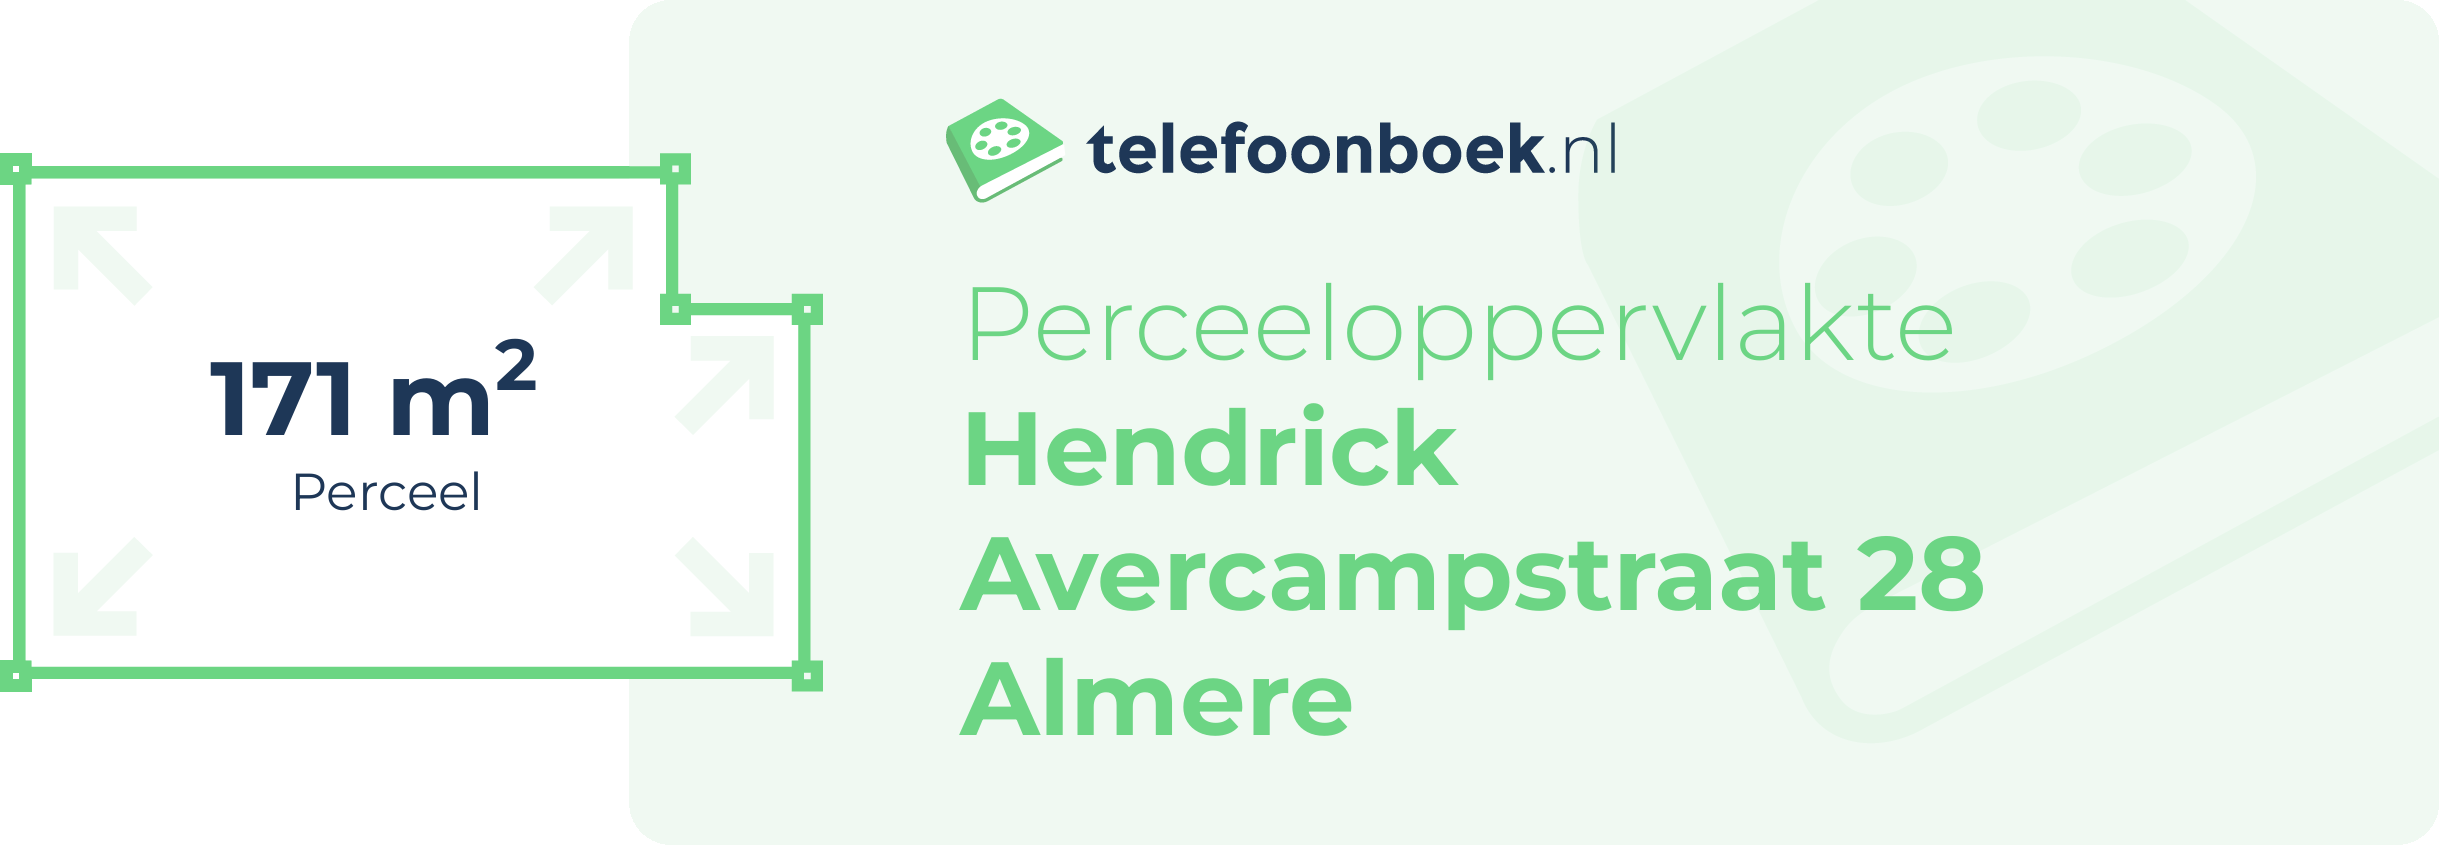 Perceeloppervlakte Hendrick Avercampstraat 28 Almere